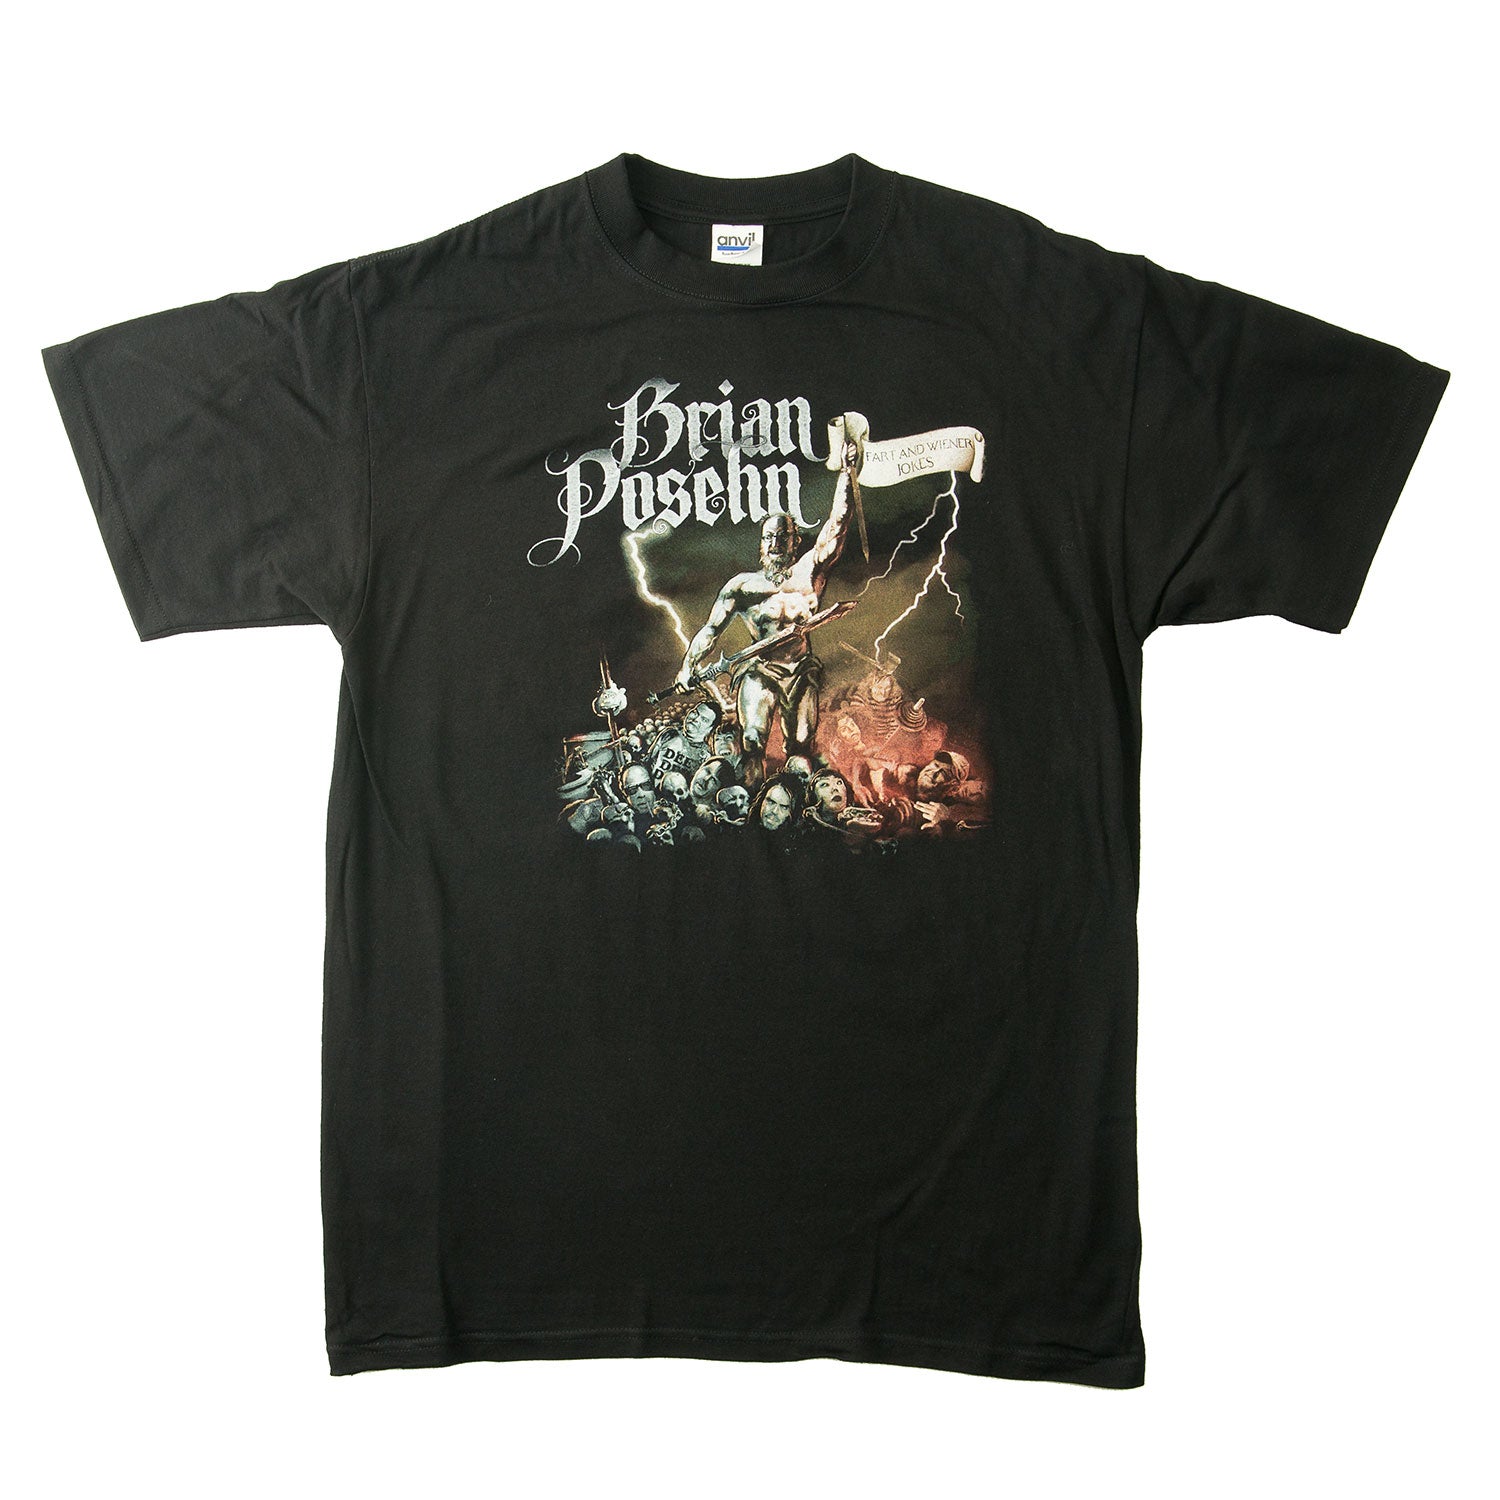 Brian Posehn "Fart" T-Shirt